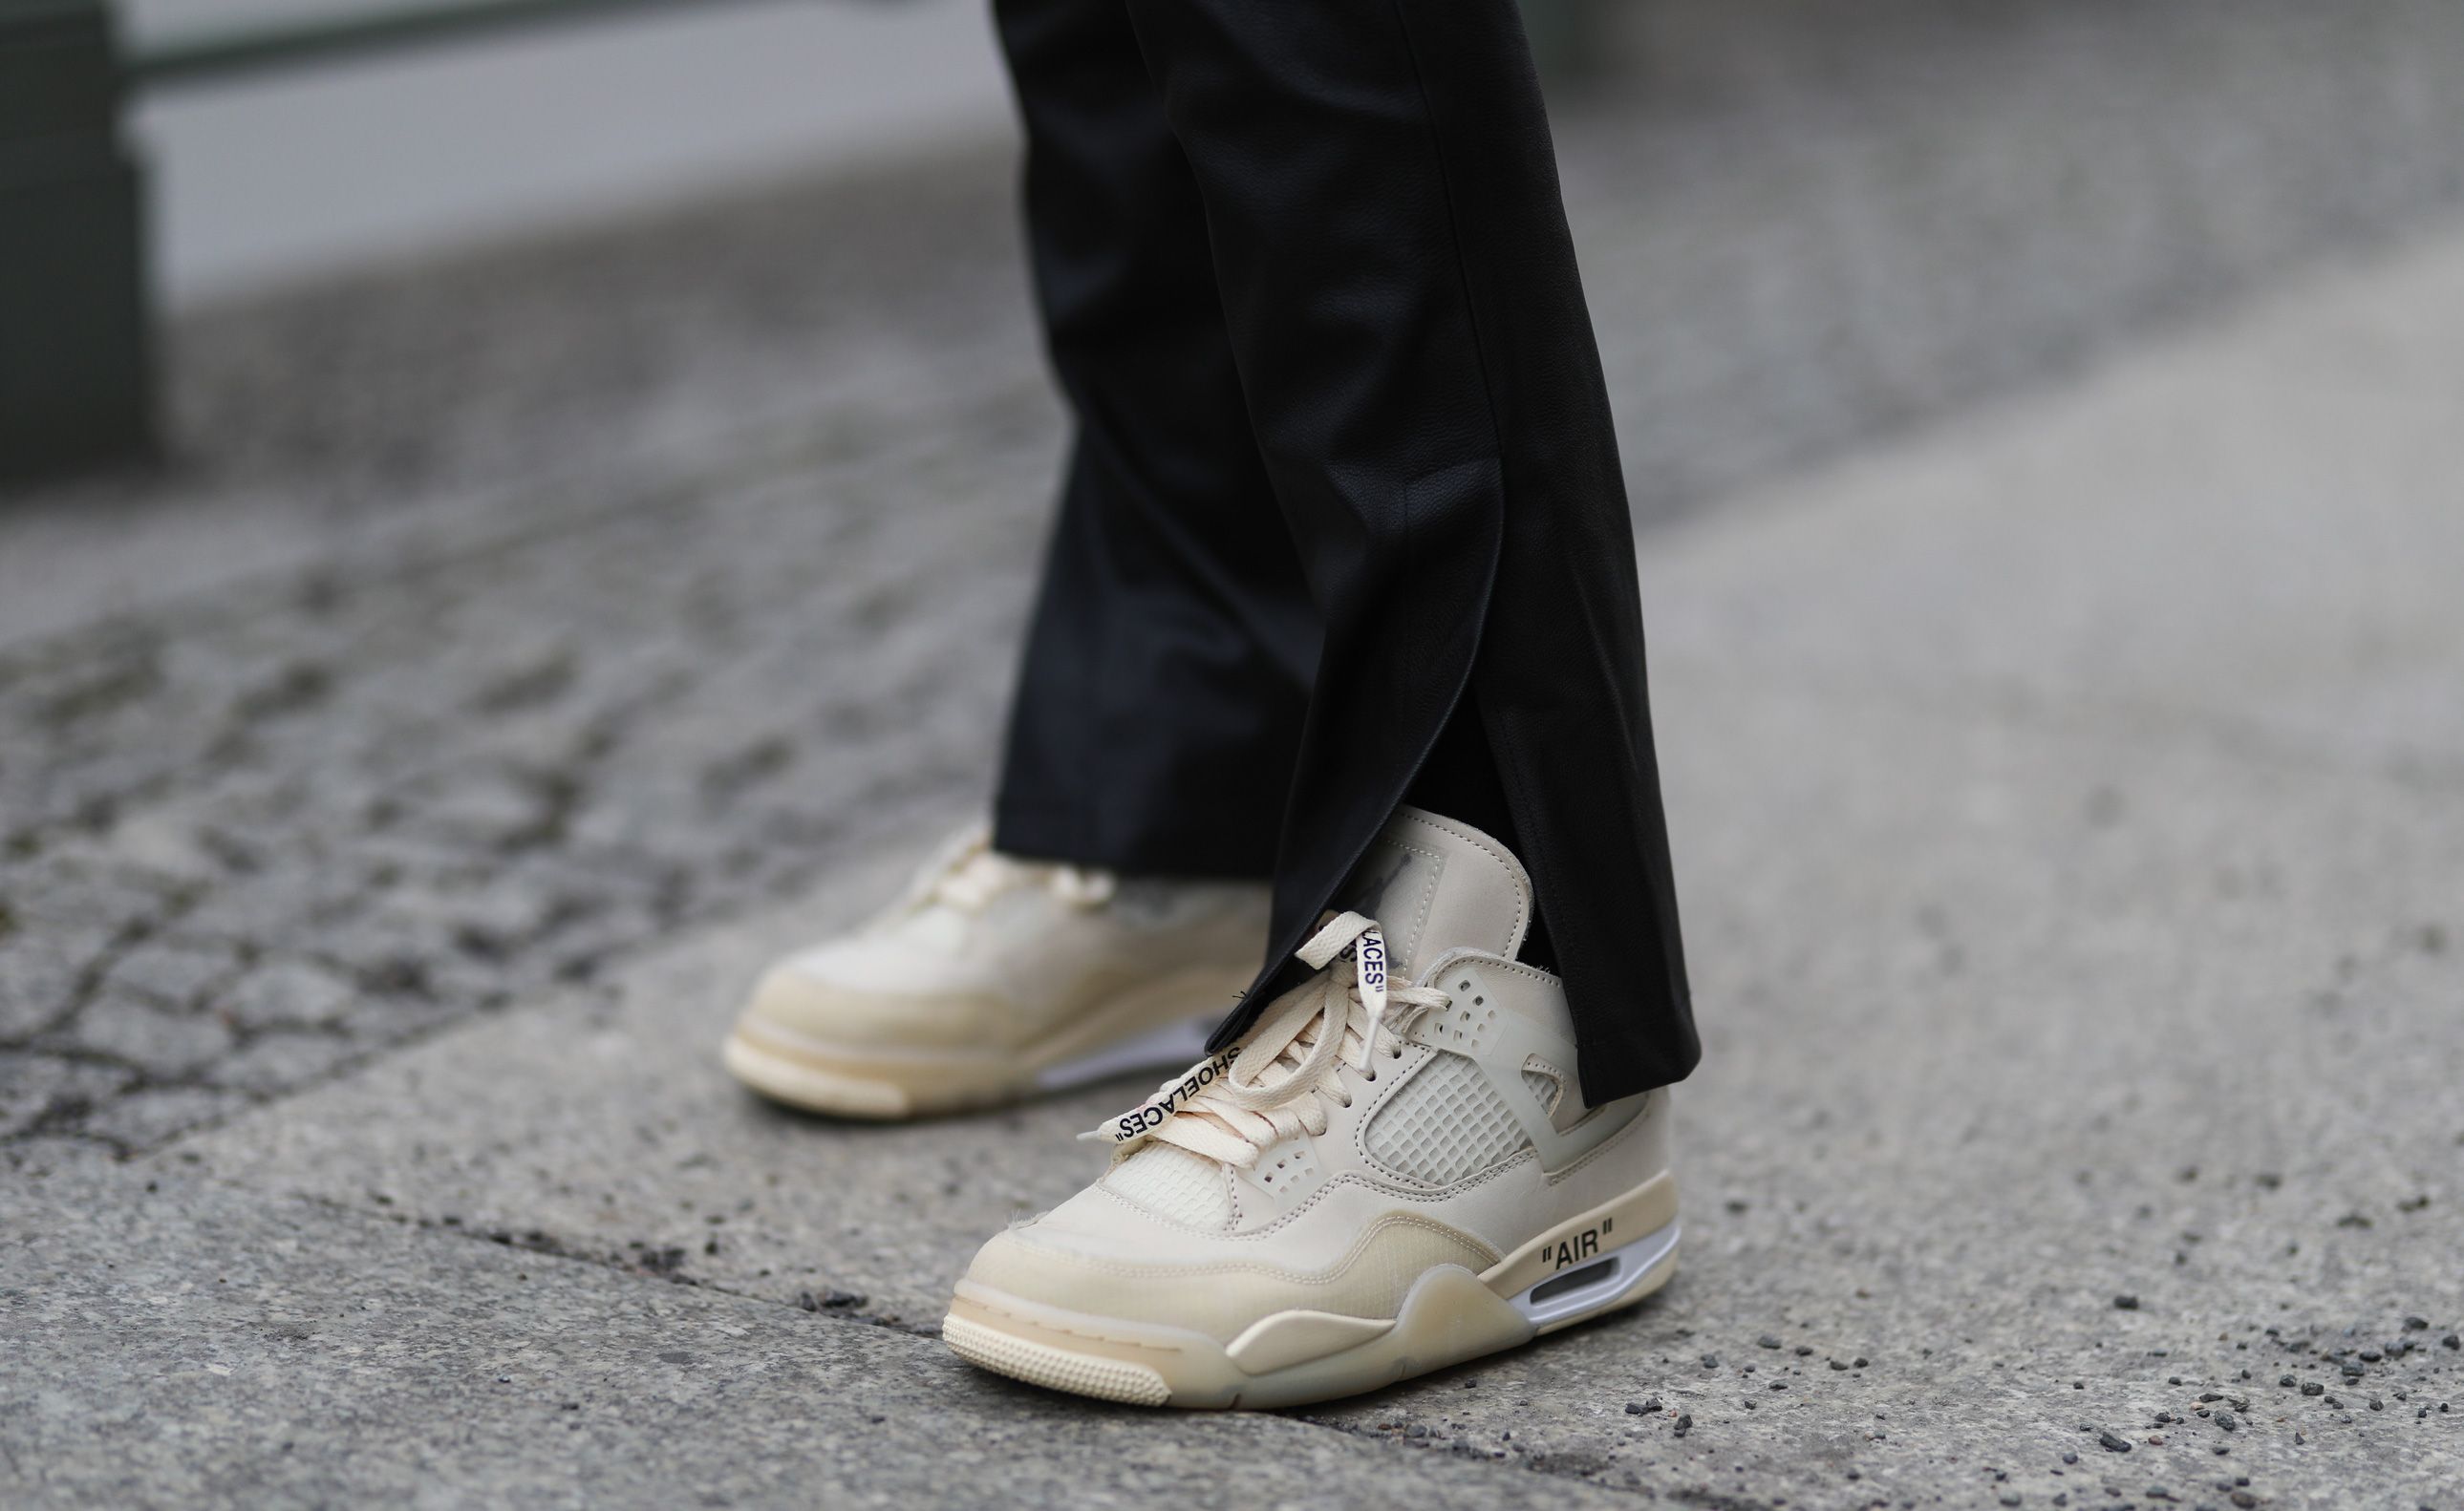 Inclinado Suponer pronunciación Las zapatillas Nike de las nórdicas por 44 € en El Corte Inglés